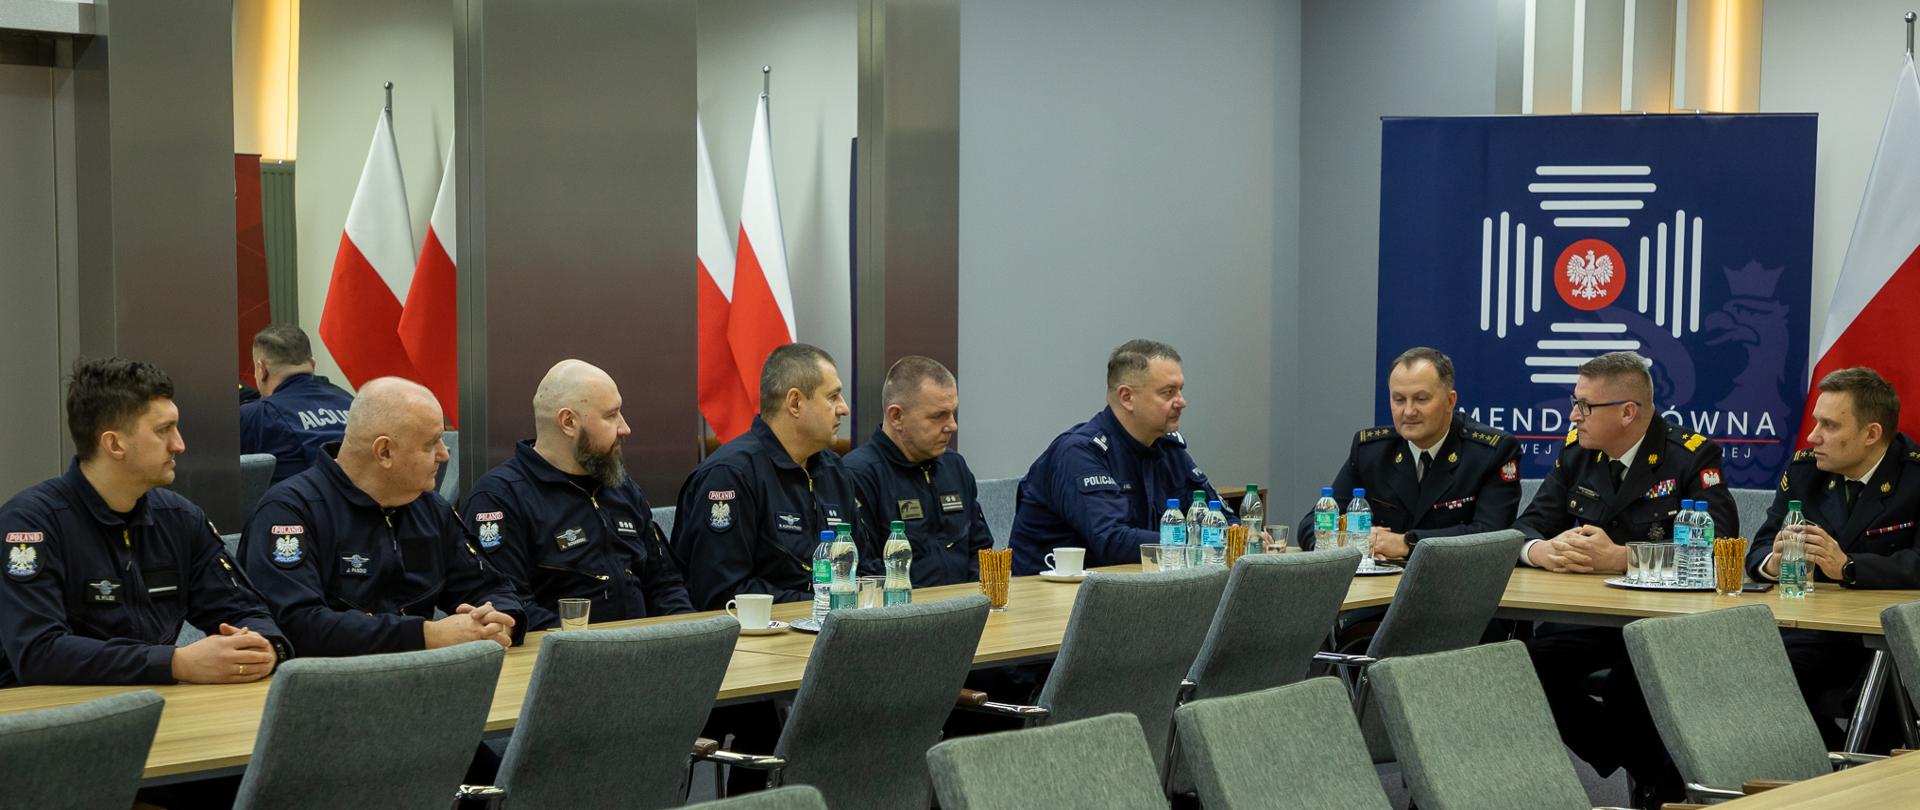 Na zdjęciu widać grupę Policjantów oraz strażaków podczas spotkania w sali konferencyjnej.